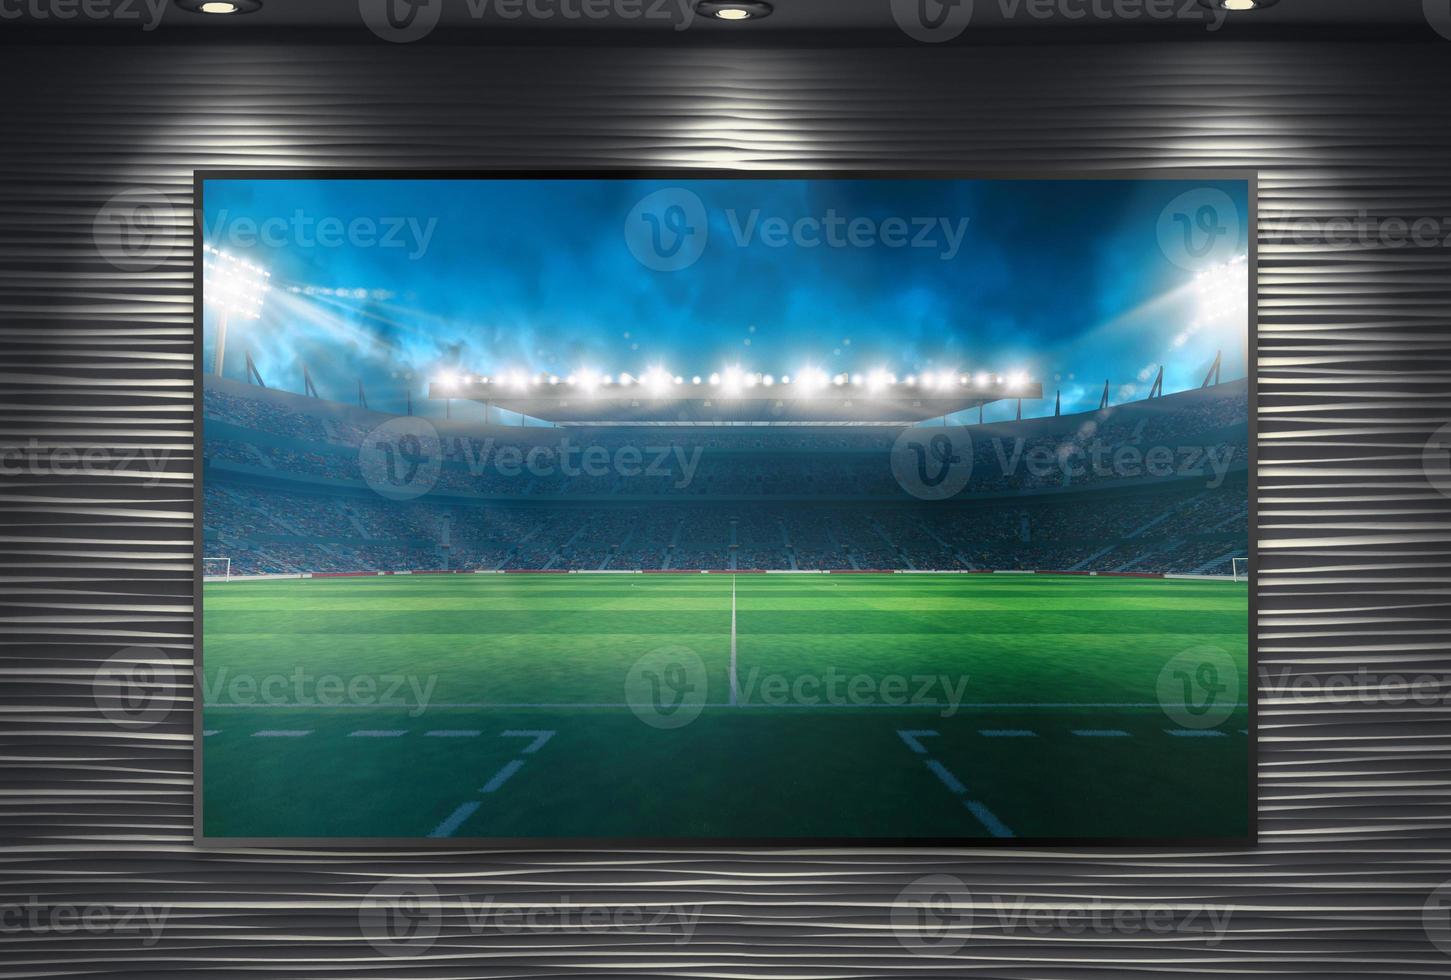 Aufpassen ein Fußball Veranstaltung auf ein groß Fernseher Mauer montiert und beleuchtet durch Scheinwerfer foto